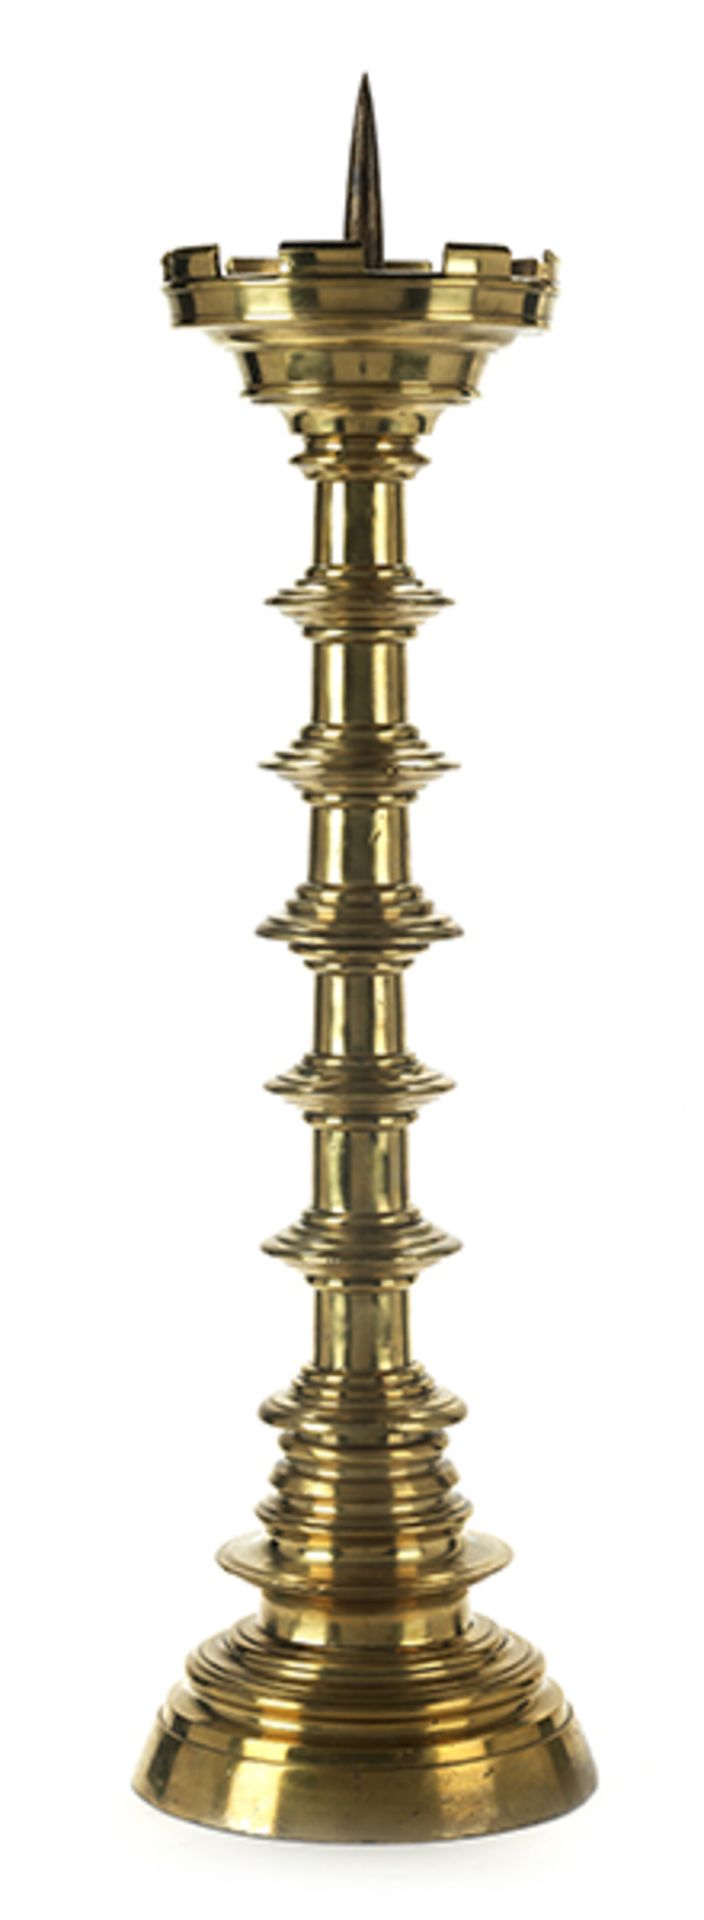 Bronzeleuchter Höhe inkl. Dorn: 58,5 cm. Italienisch, 19. Jahrhundert. Messingbronze gegossen und